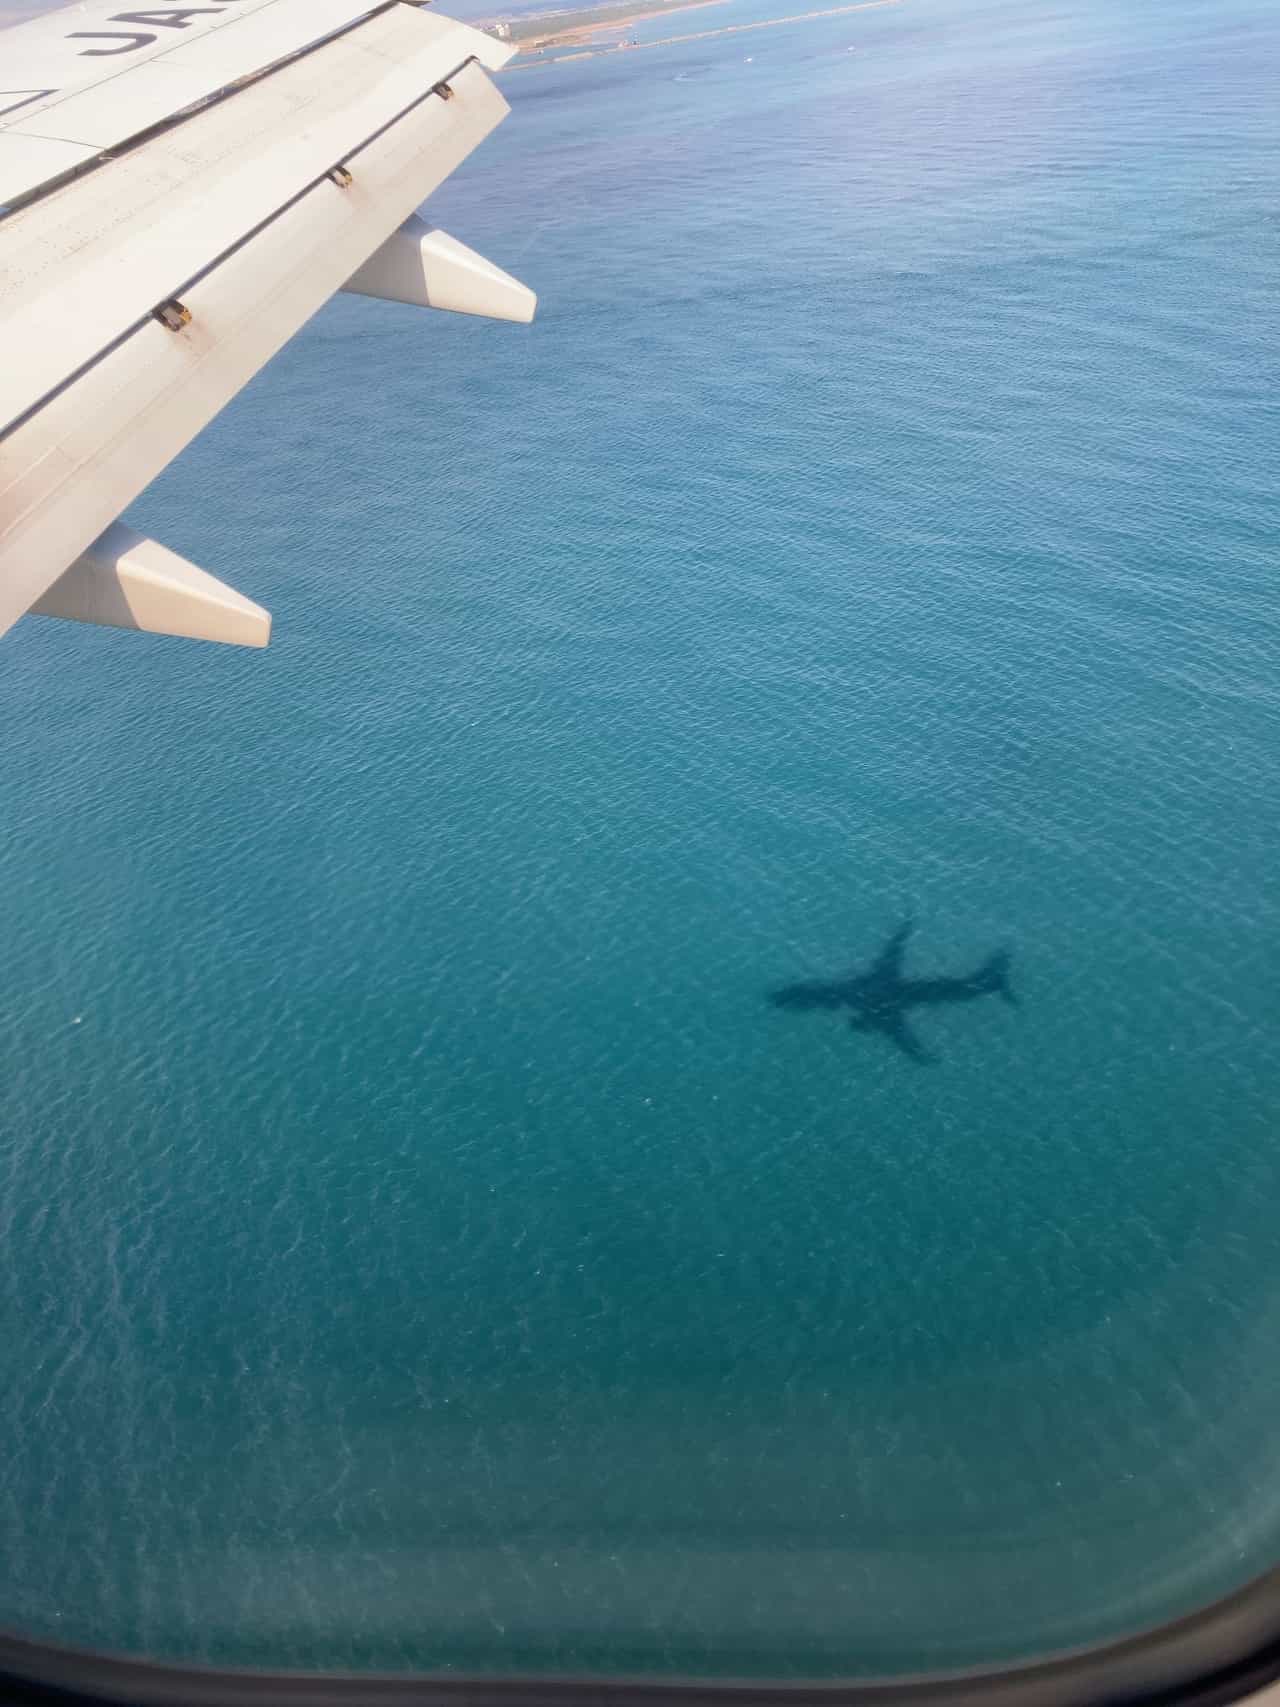 海面に映る航空機の影